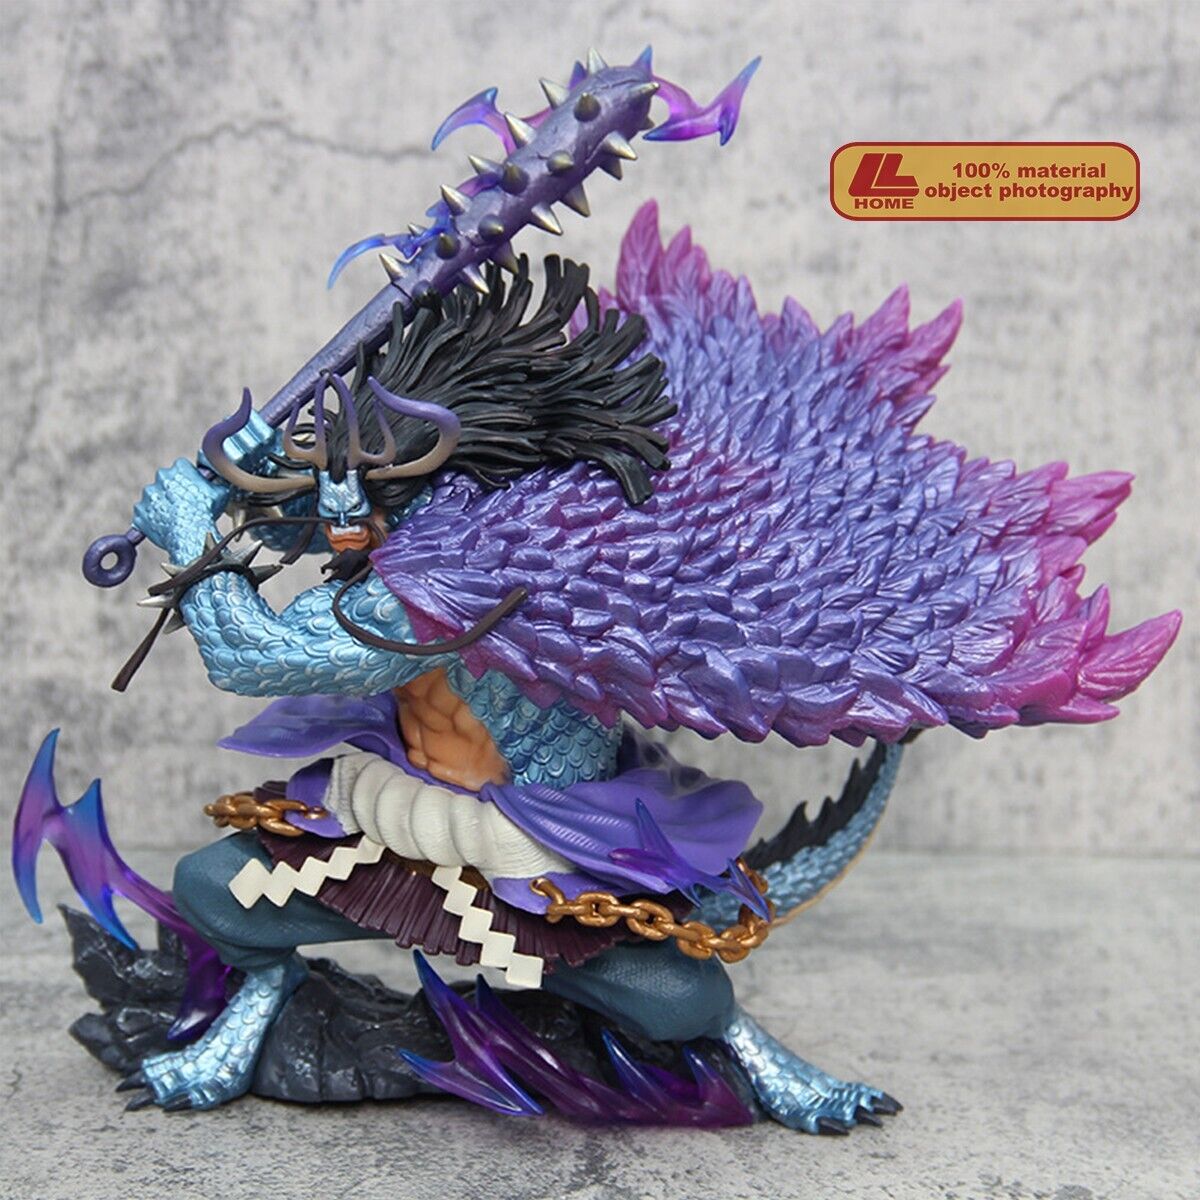 Anime OP Human Beast Kaidou Prize animalize dragon battle FigureToy Gift